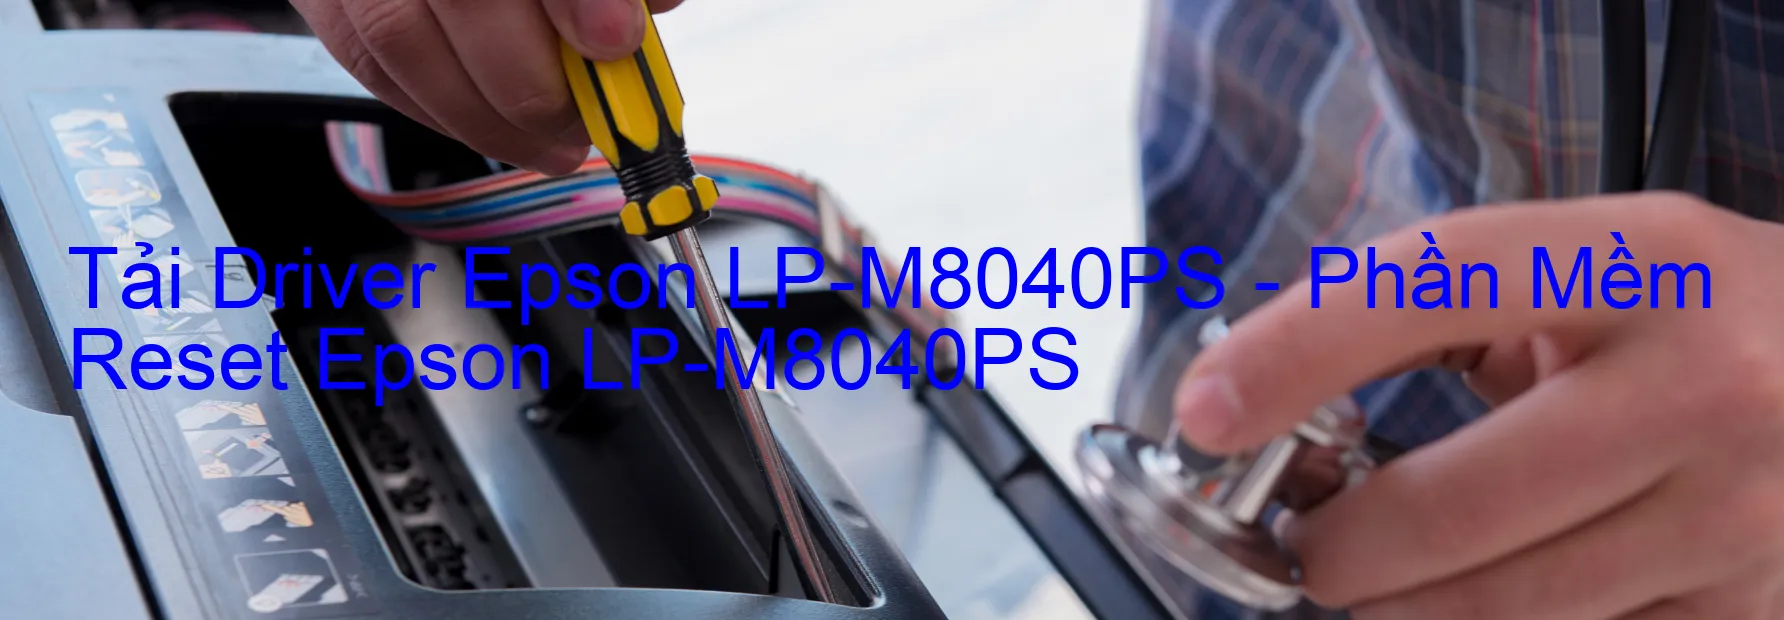 Driver Epson LP-M8040PS, Phần Mềm Reset Epson LP-M8040PS